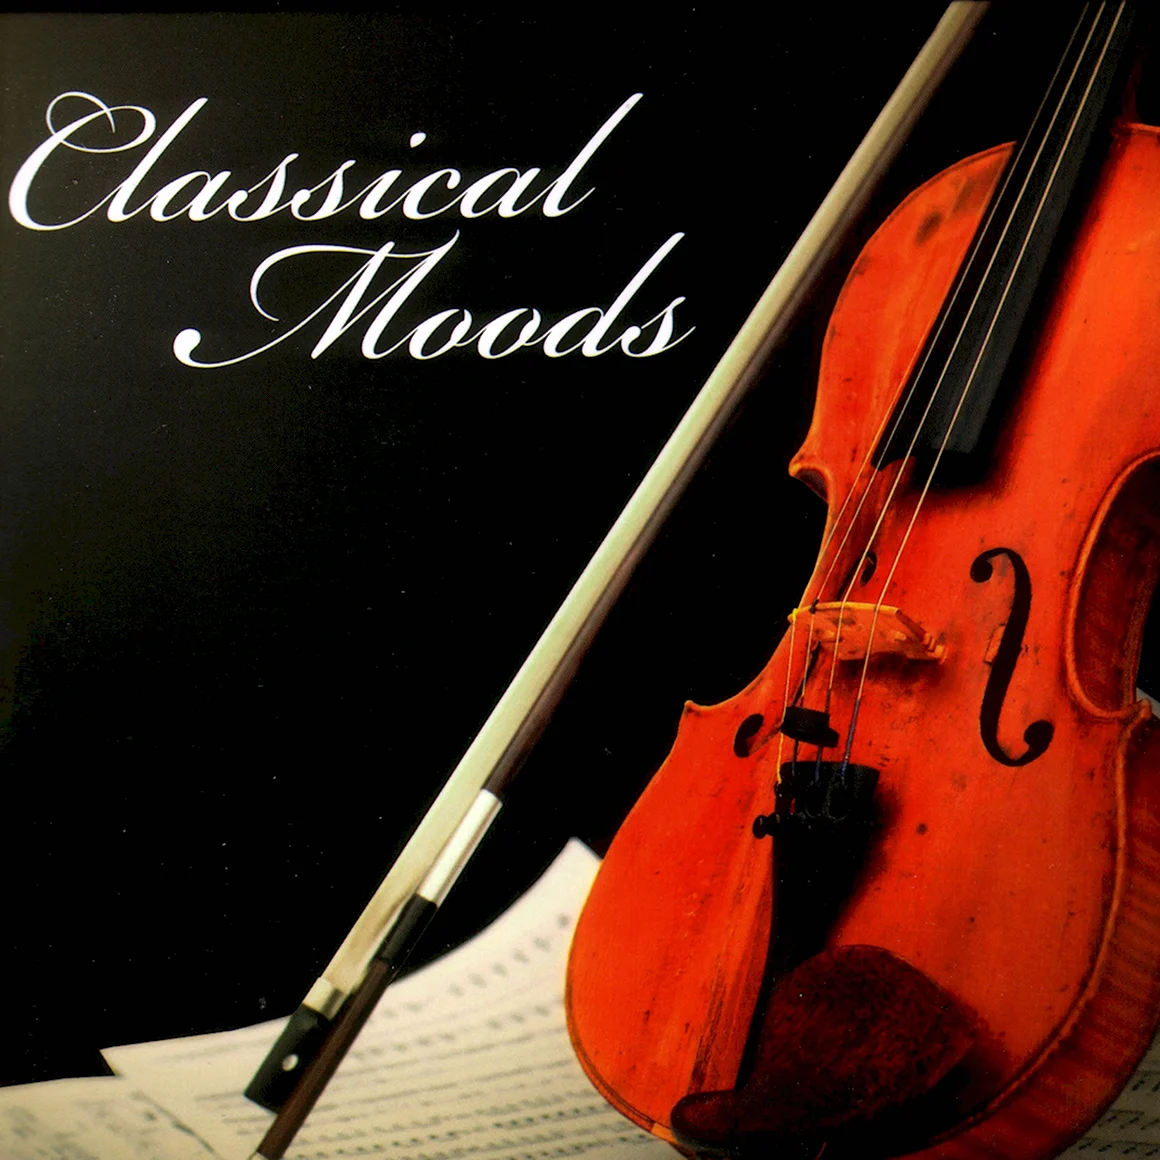 Classical mood